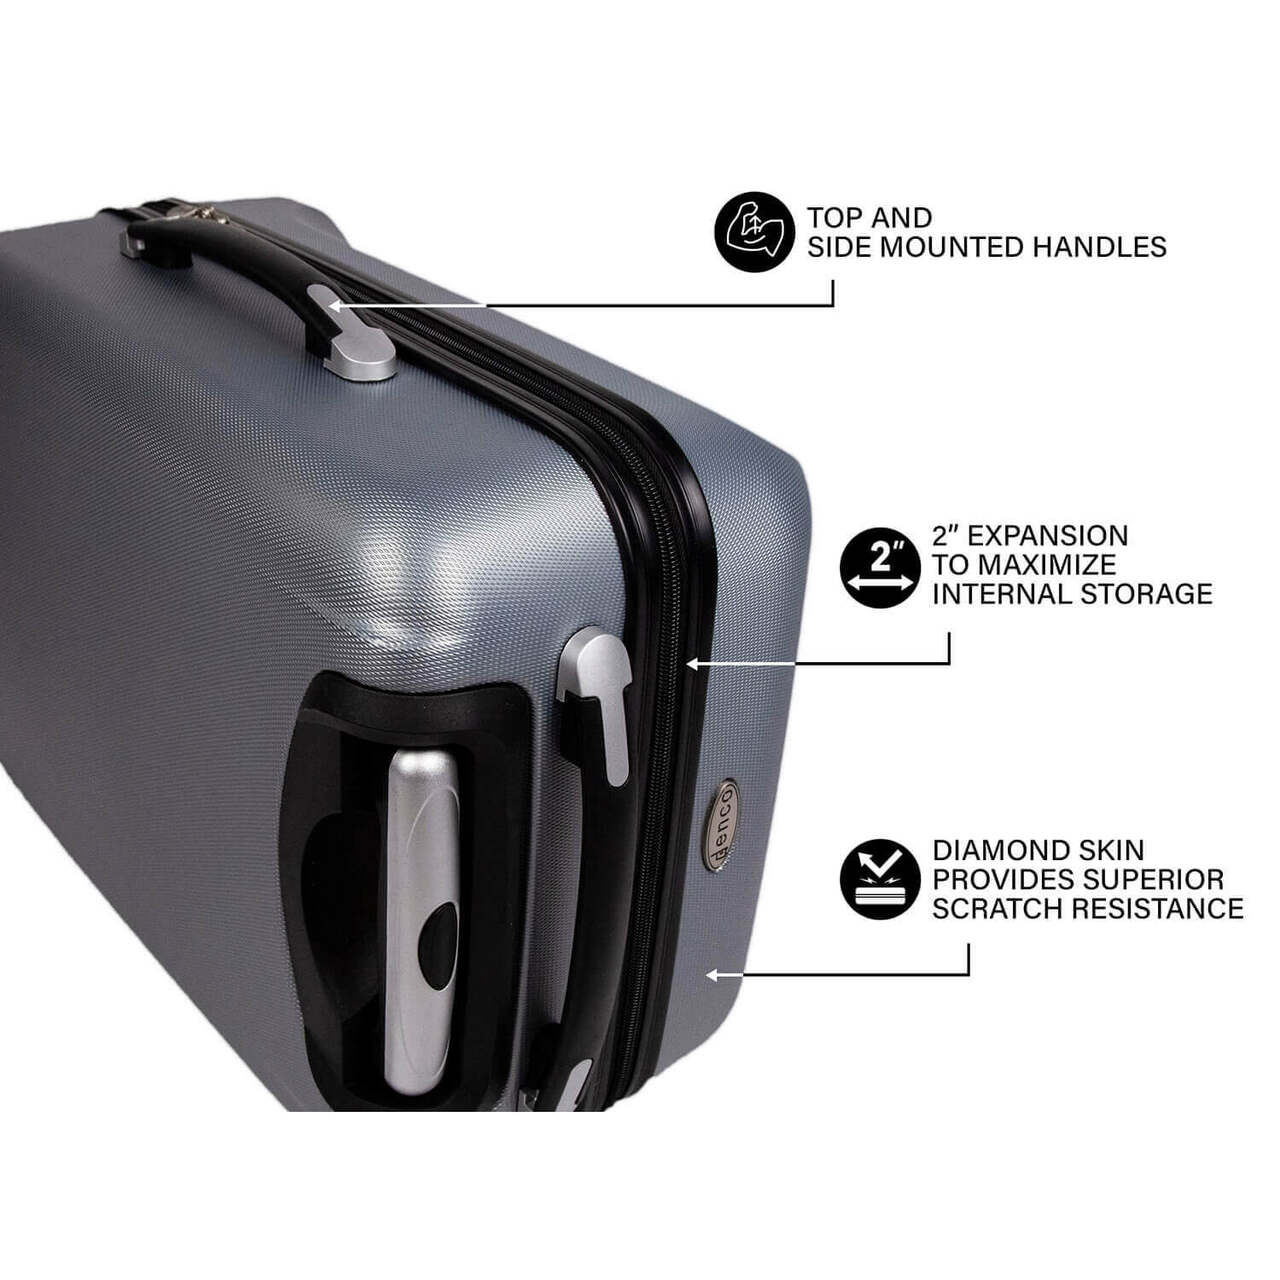 Utah Utes 20" Hardcase Luggage Carry-on Spinner